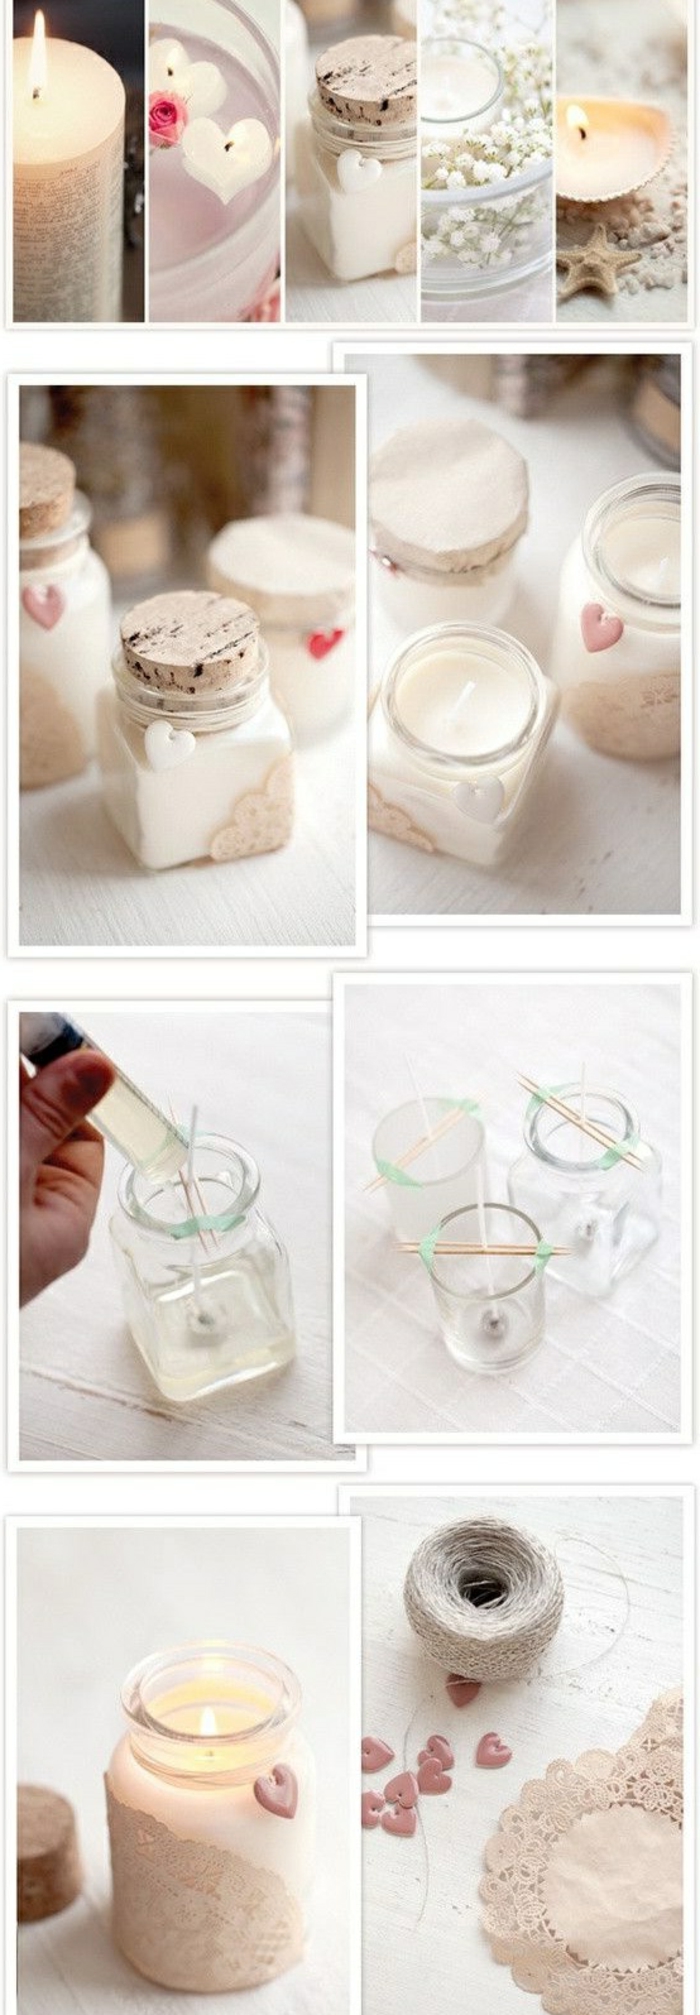 hermoso recipiente de vidrio con velas de bricolaje blanco